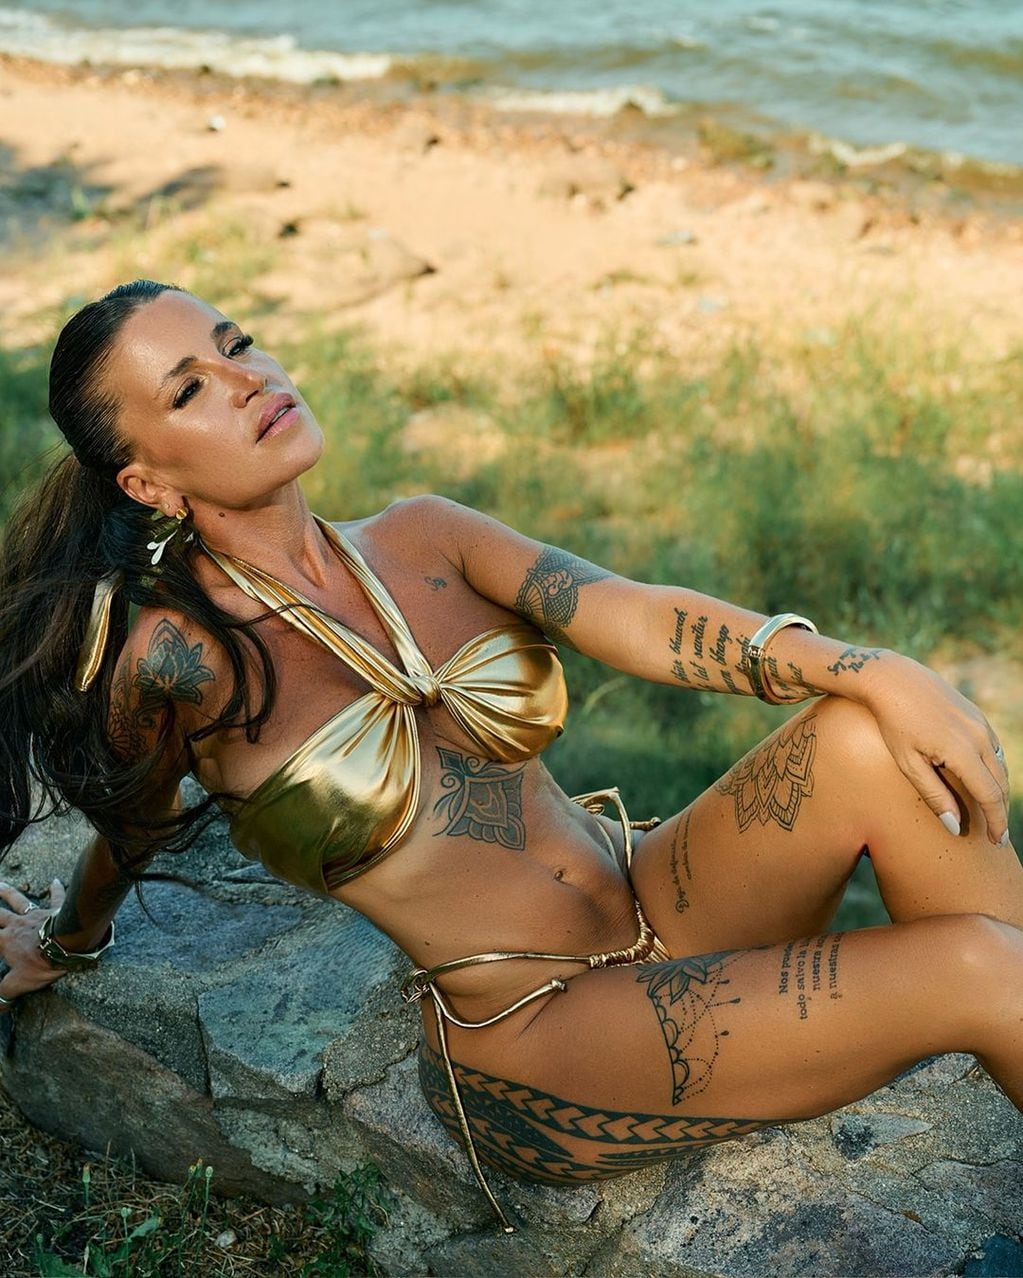 Como una diosa, Florencia Peña paralizó Instagram posando con una microbikini dorado ultra sexy